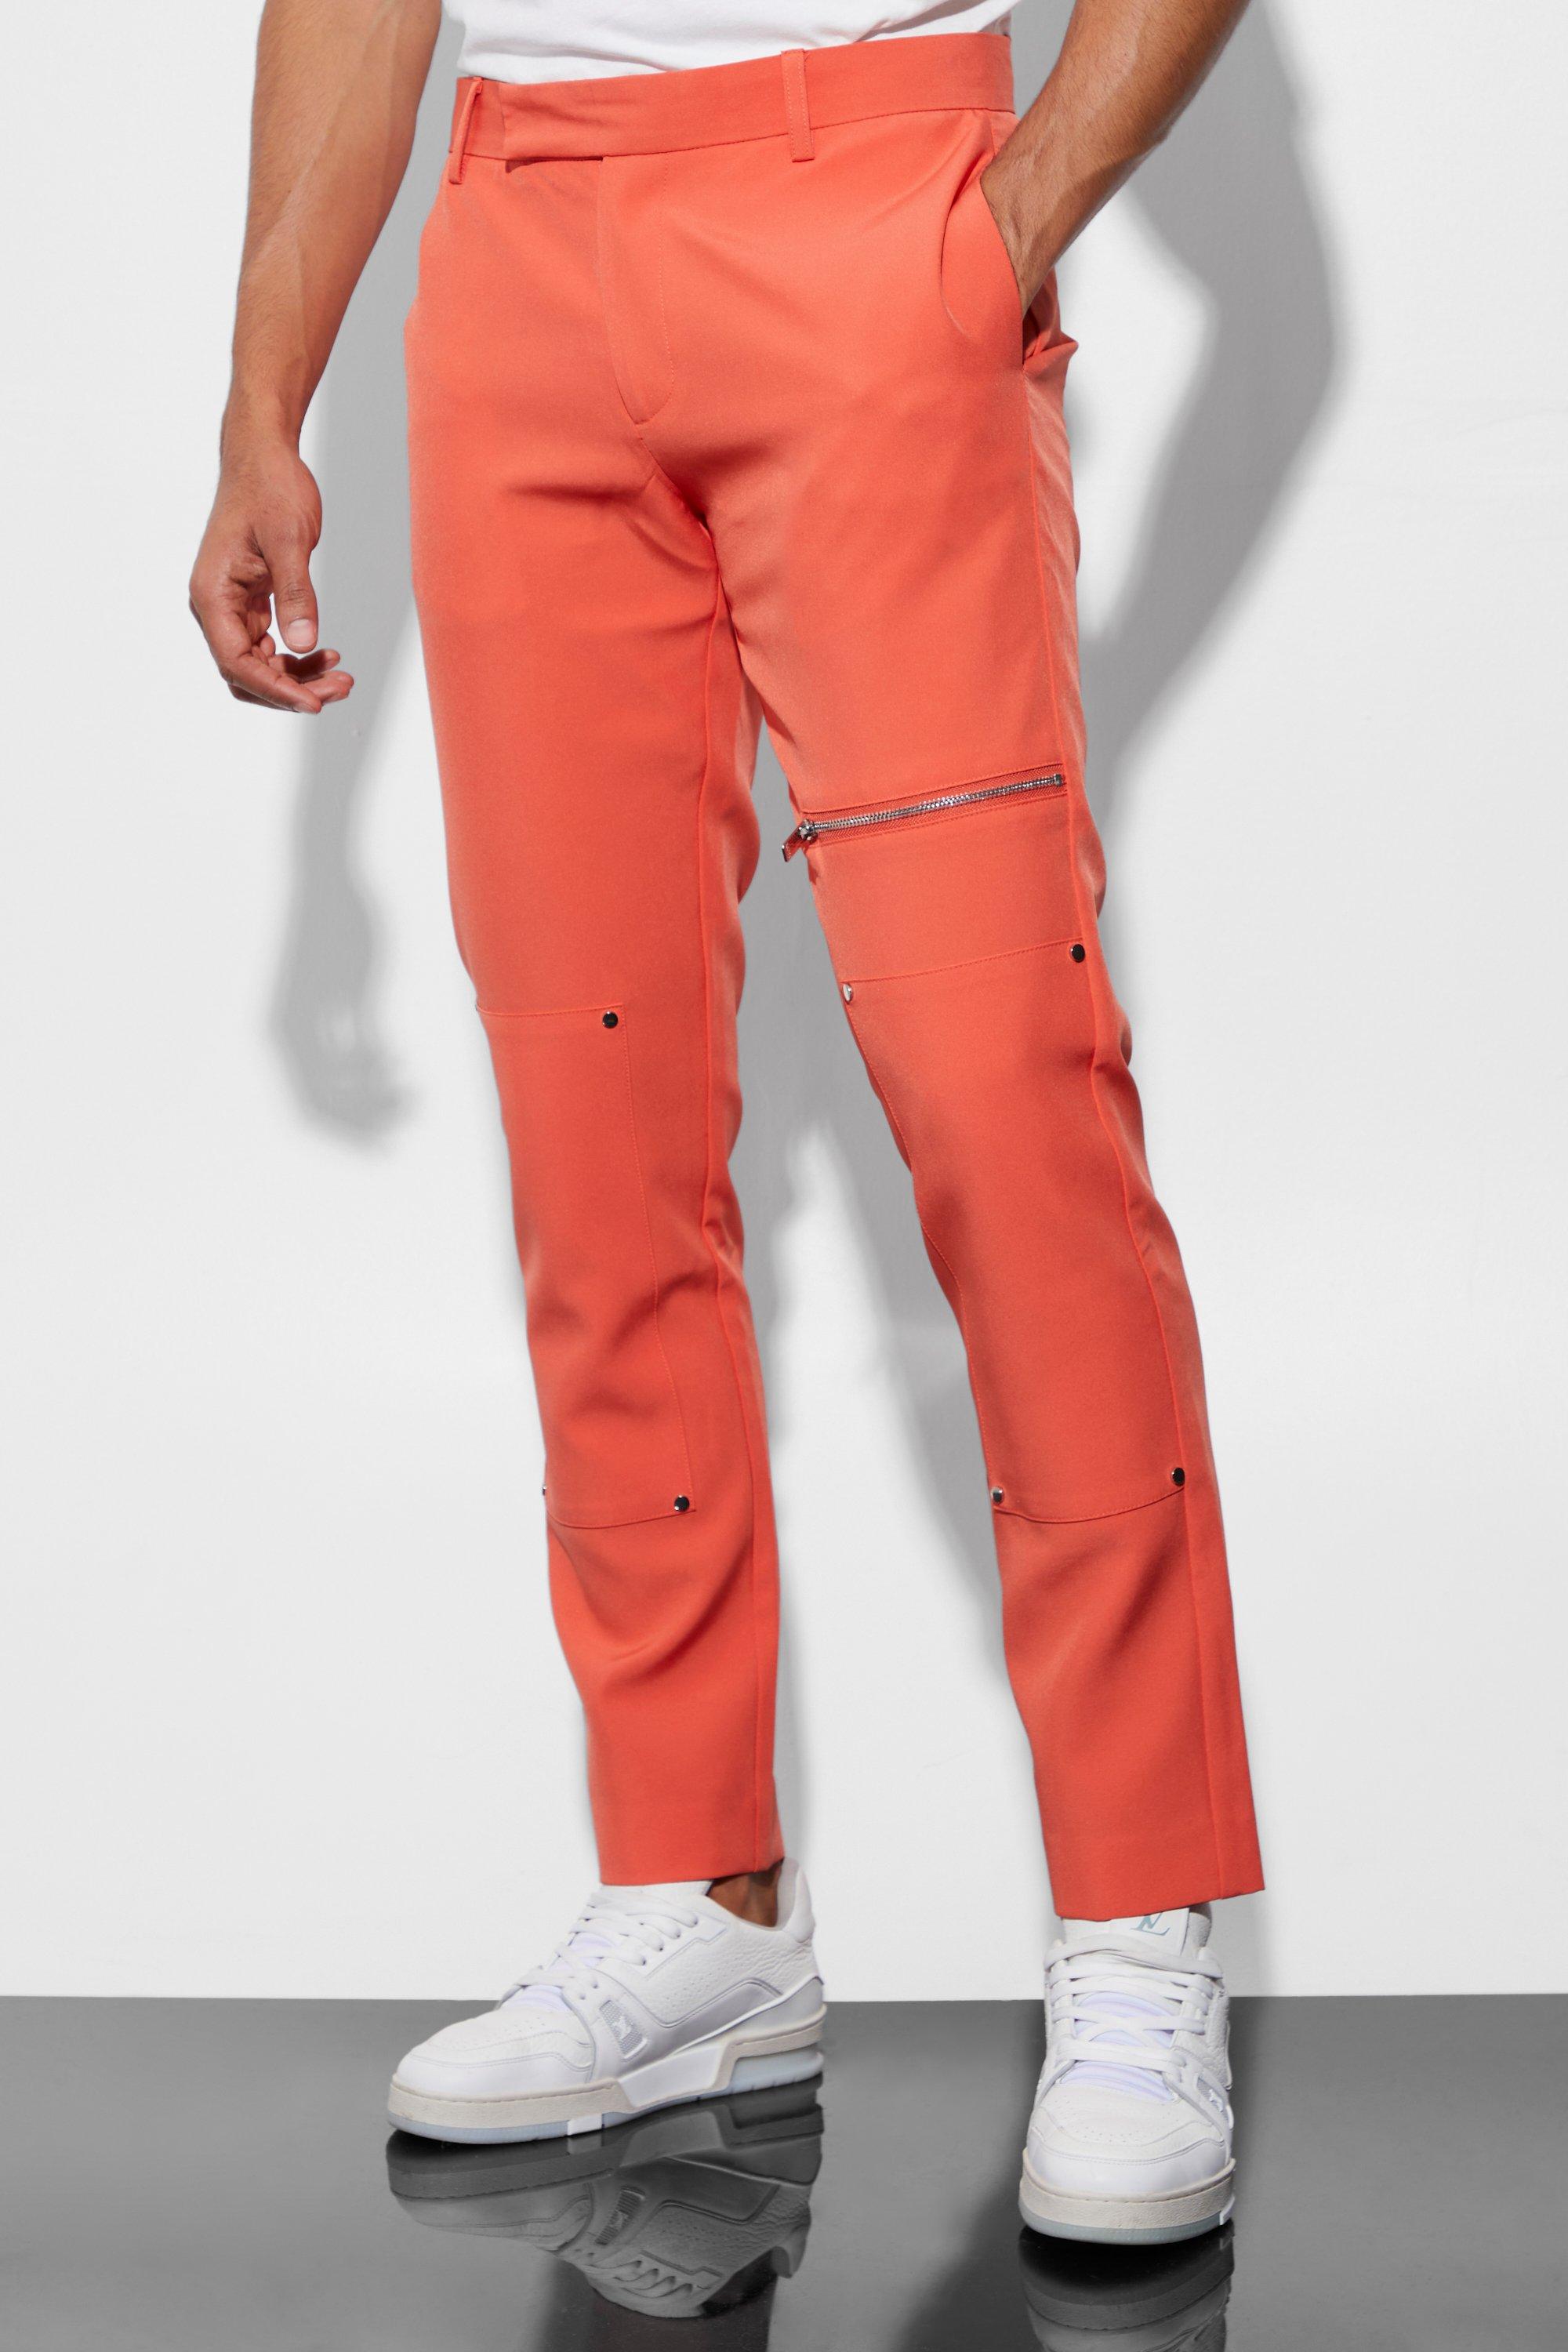 pantalon de costume skinny homme - orange - 28r, orange